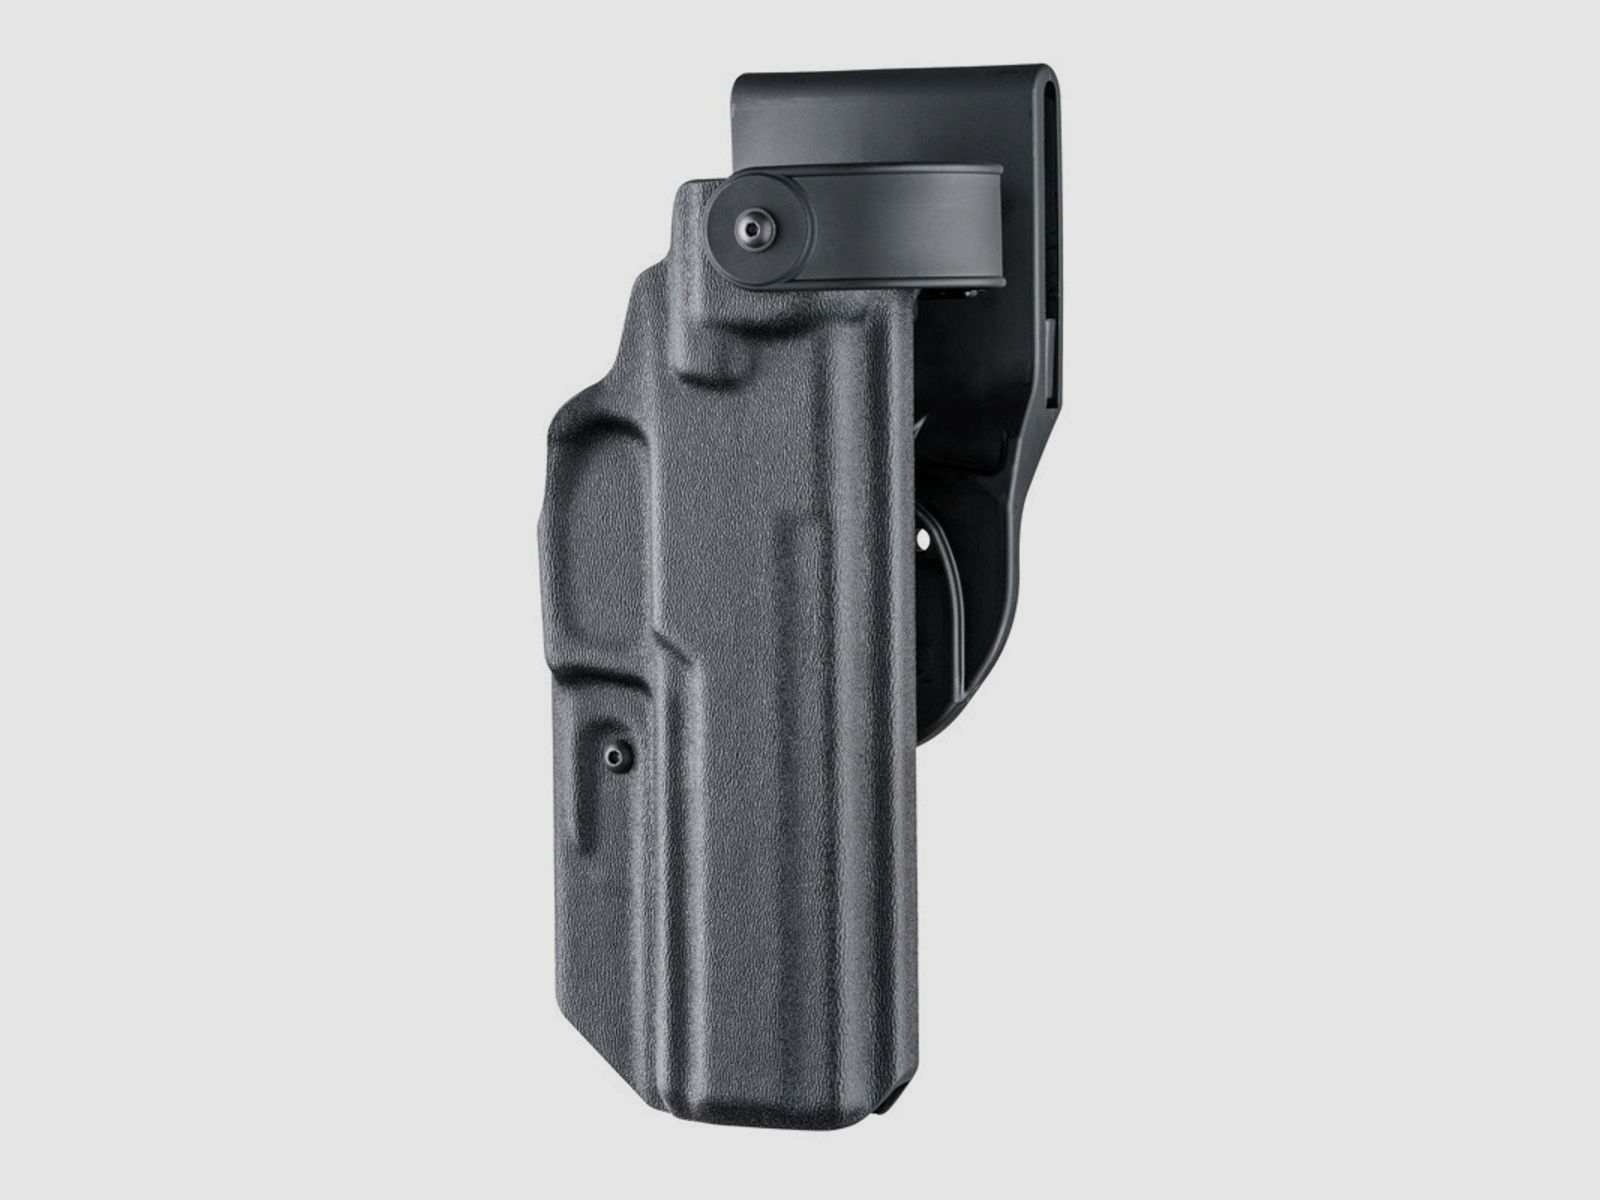 Dienstholster ARS Stage2 Carry Schwarz Level III Linkshänder-Glock 17, 18, 22, 31, 37, 47